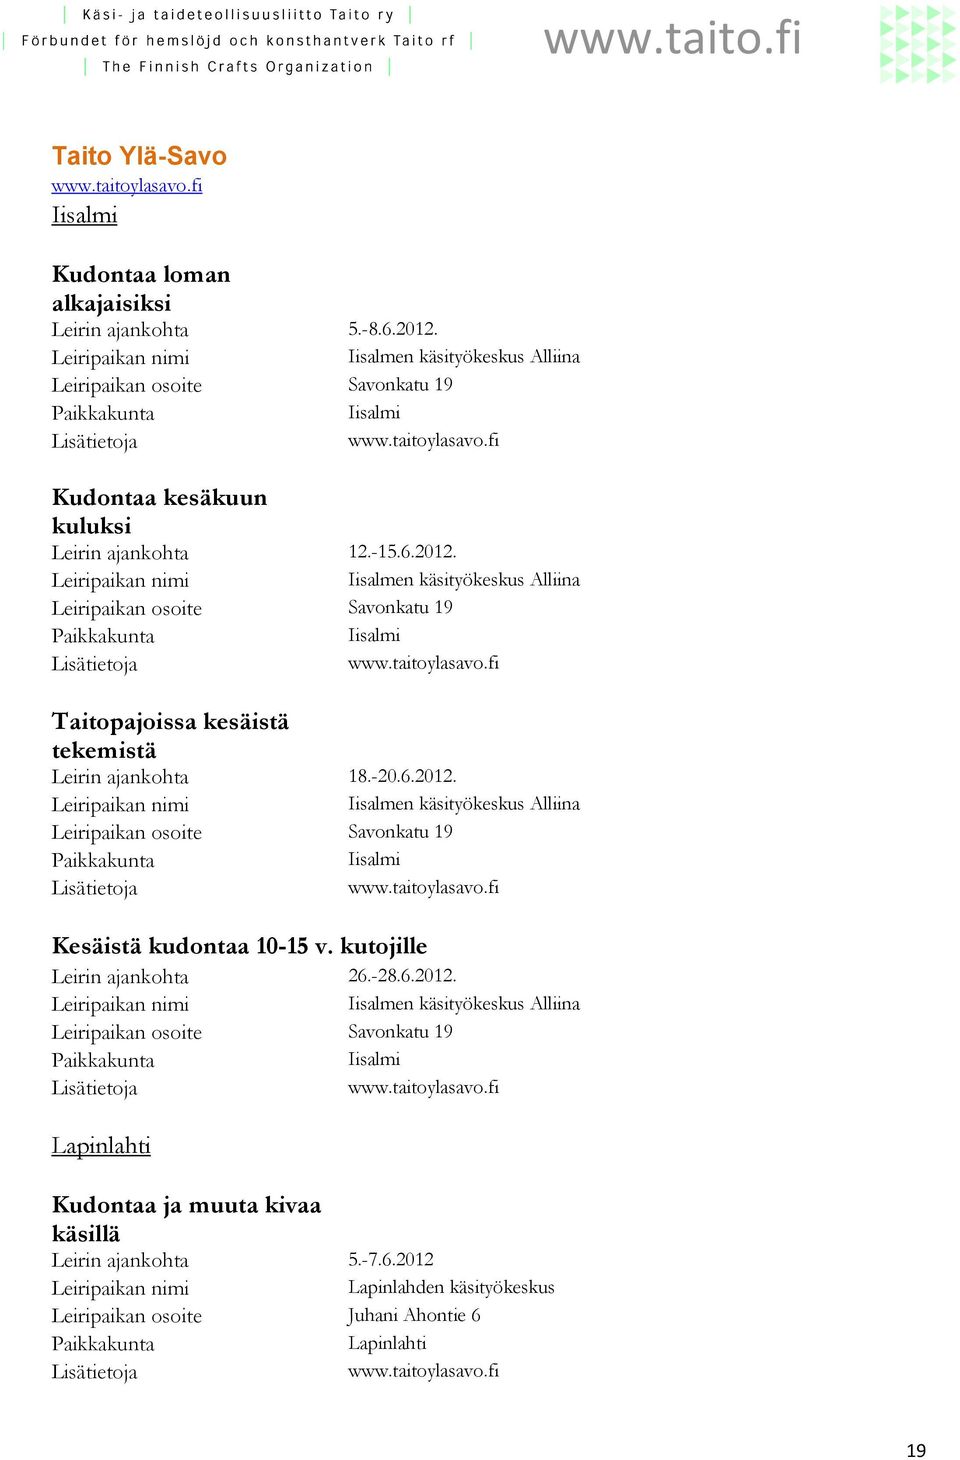 Iisalmen käsityökeskus Alliina Savonkatu 19 Iisalmi Taitopajoissa kesäistä tekemistä Leirin ajankohta 18.-20.6.2012.